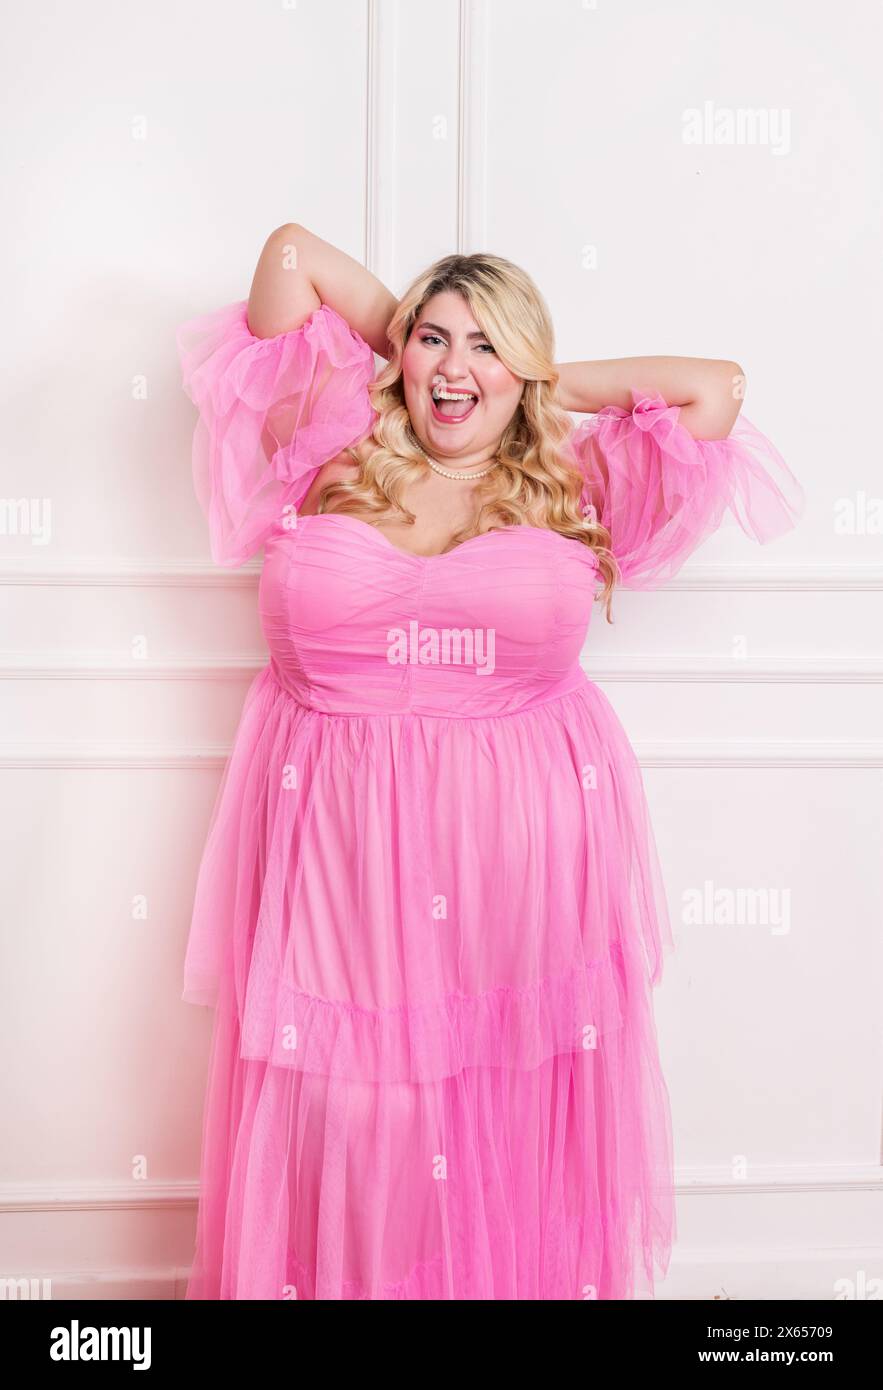 Strahlende Frau in Übergröße posiert im Studio mit Aufregung in einem stilvollen rosa Kleid Stockfoto